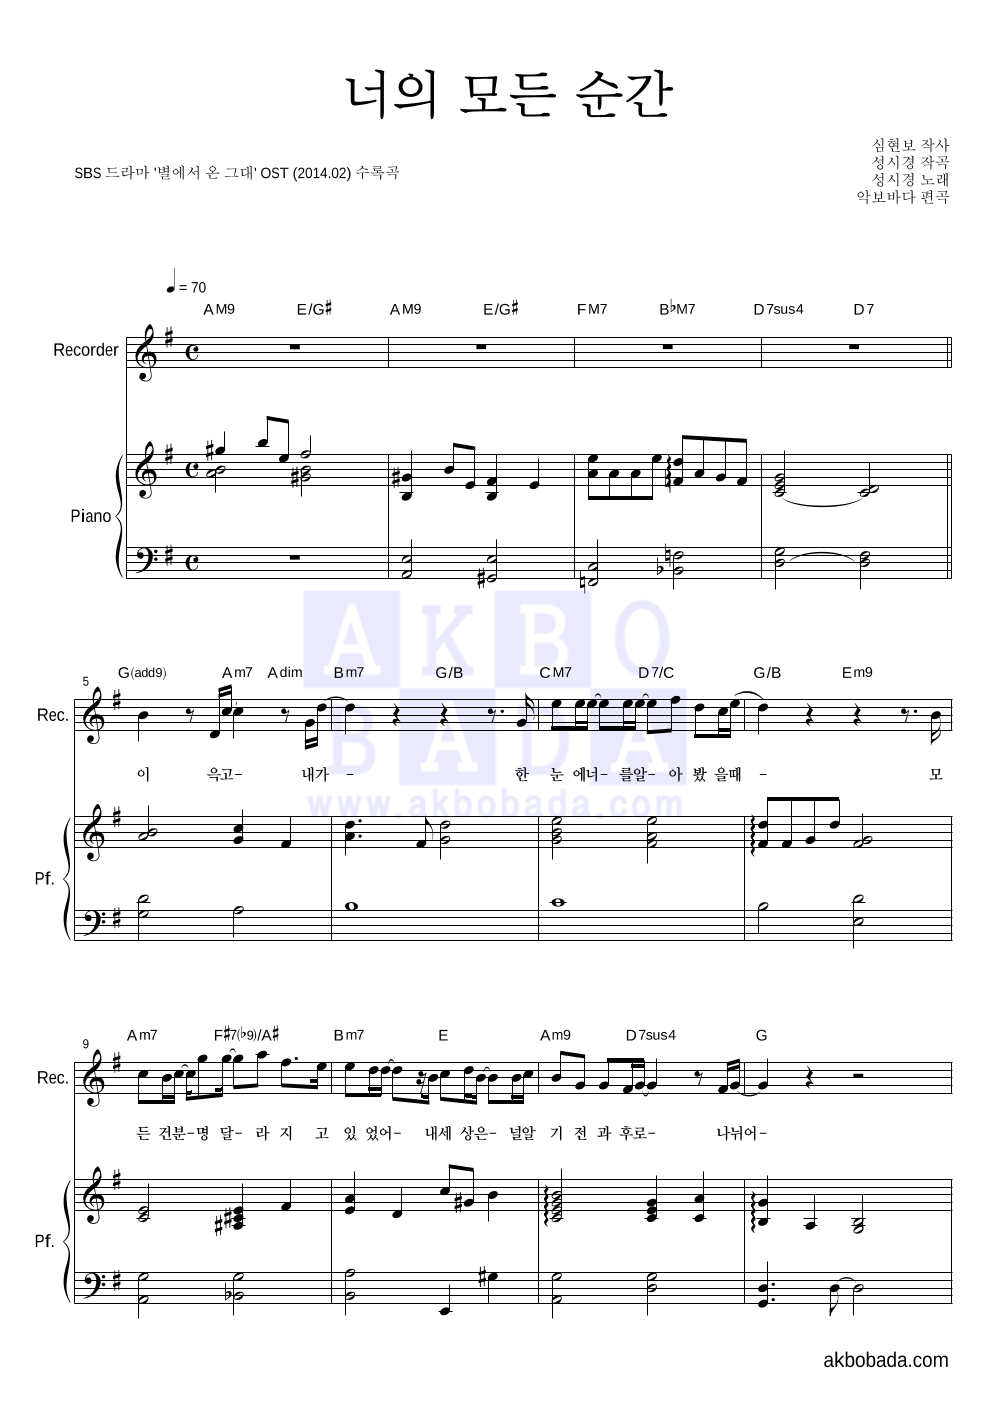 성시경 - 너의 모든 순간 (Piano Ver.) 리코더&피아노 악보 